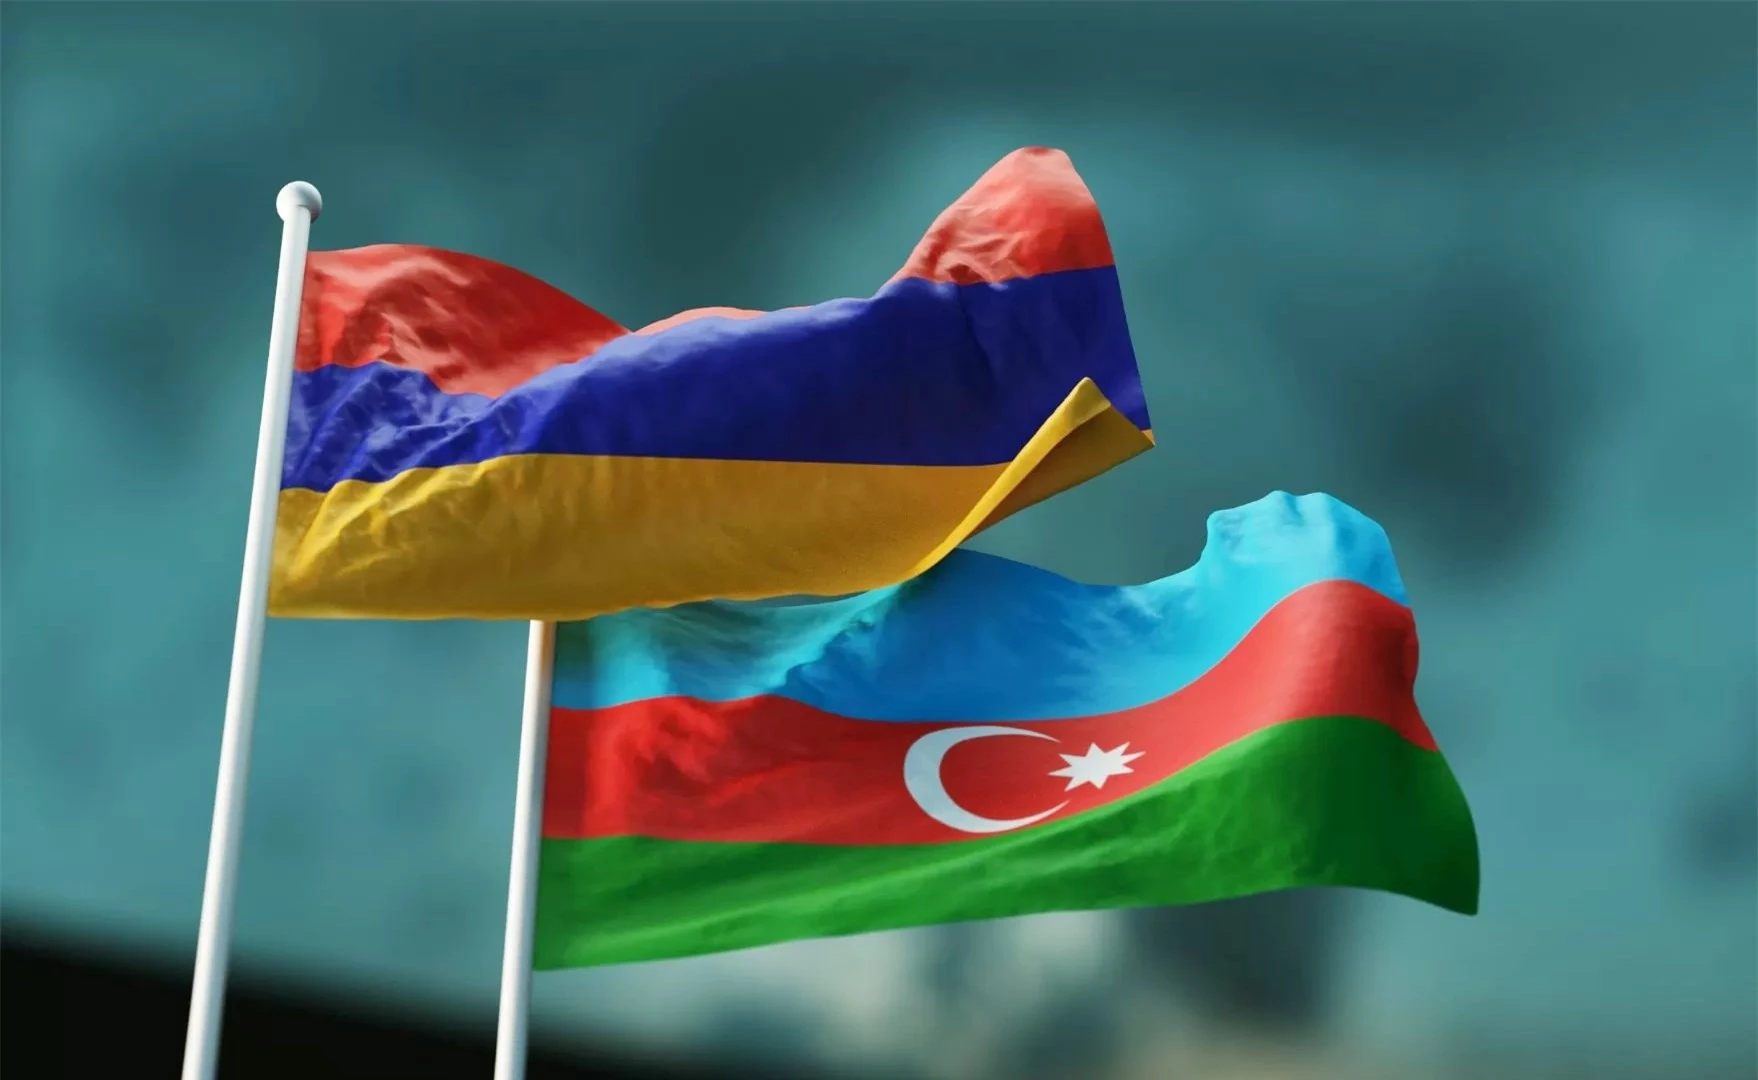 Quân sự thế giới hôm nay (9-9): Armenia cáo buộc Azerbaijan huy động quân đội ở khu vực biên giới